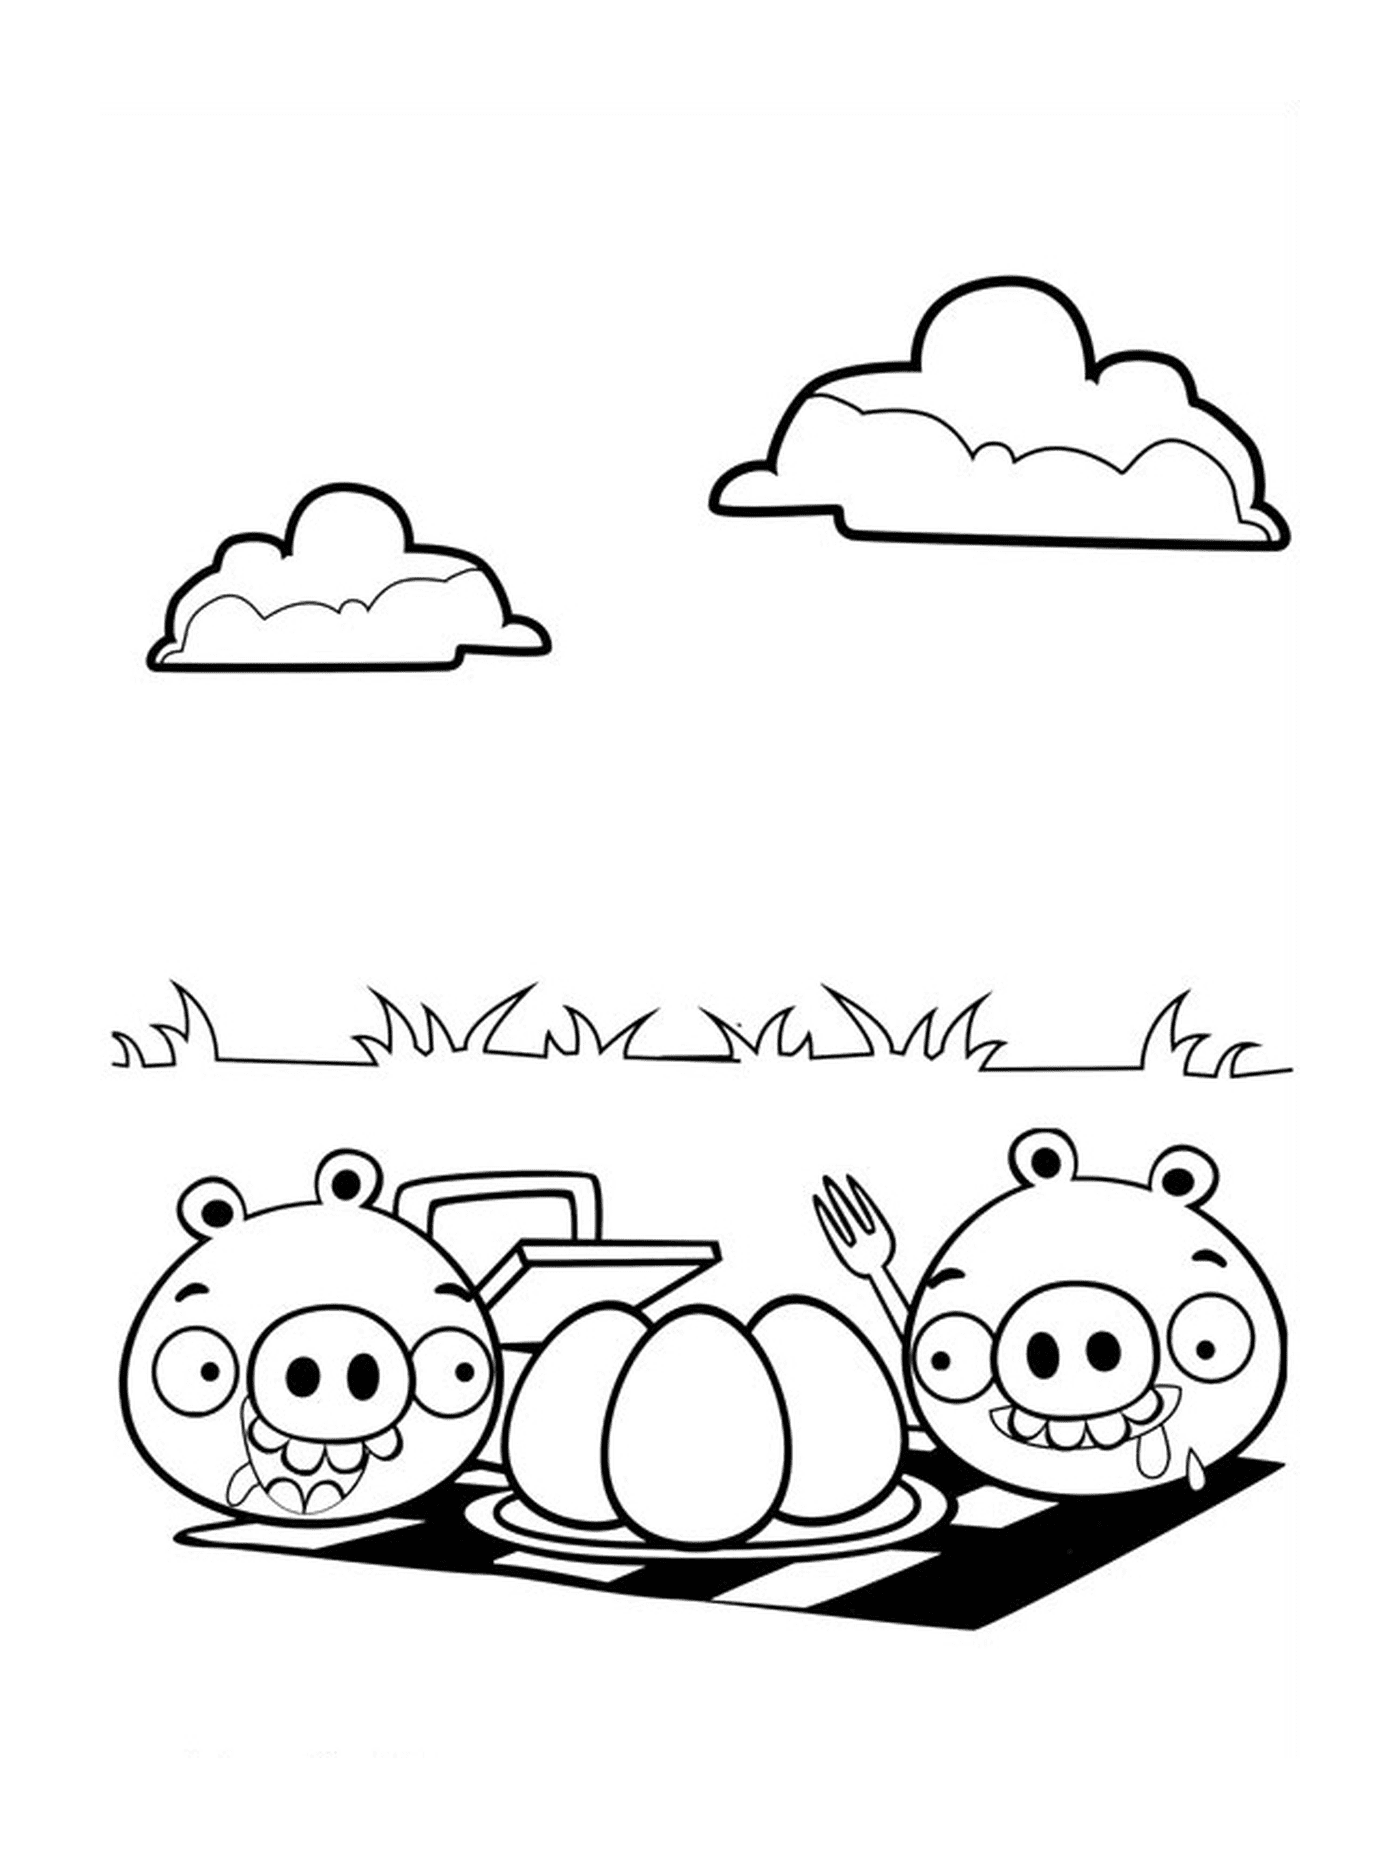  Los Angry Birds hacen un picnic, cocinan un huevo 